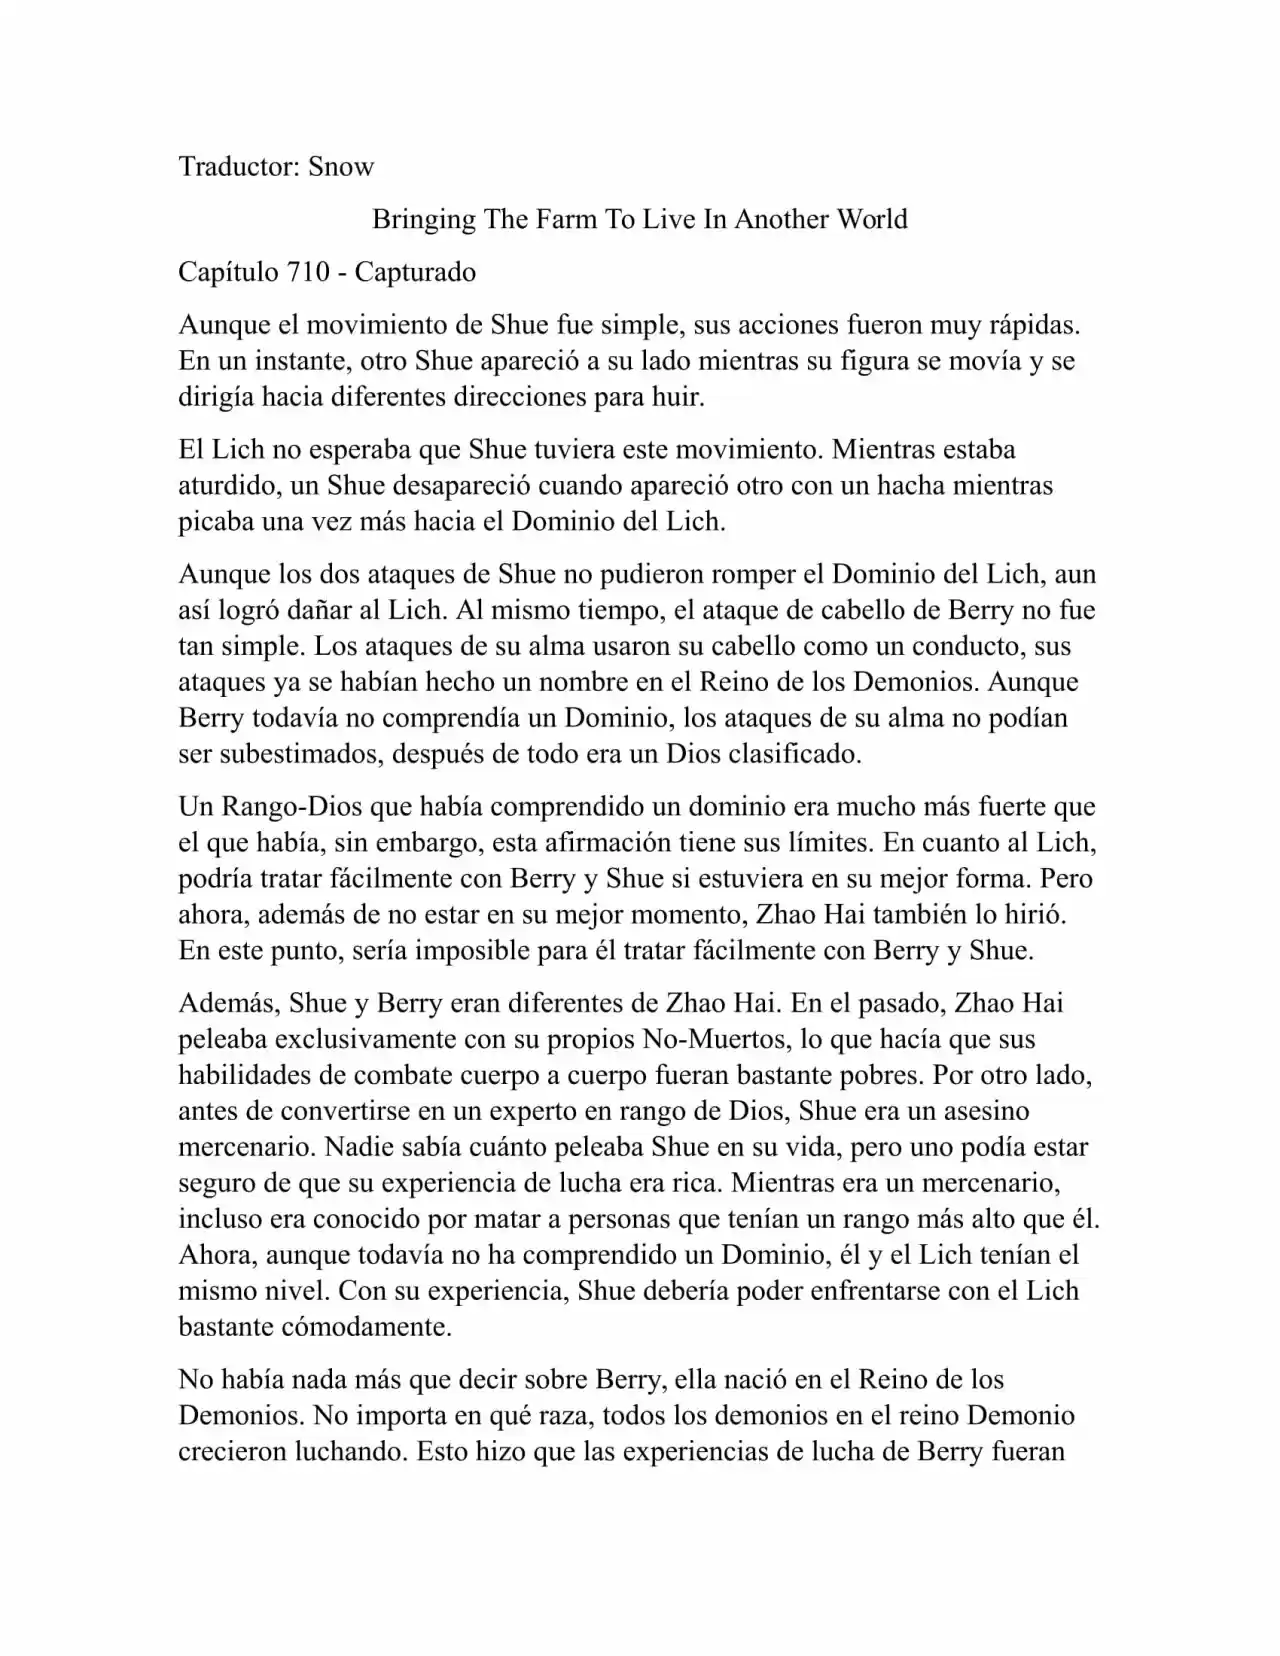 Llevando La Granja Para Vivir En Otro Mundo (Novela: Chapter 710 - Page 1